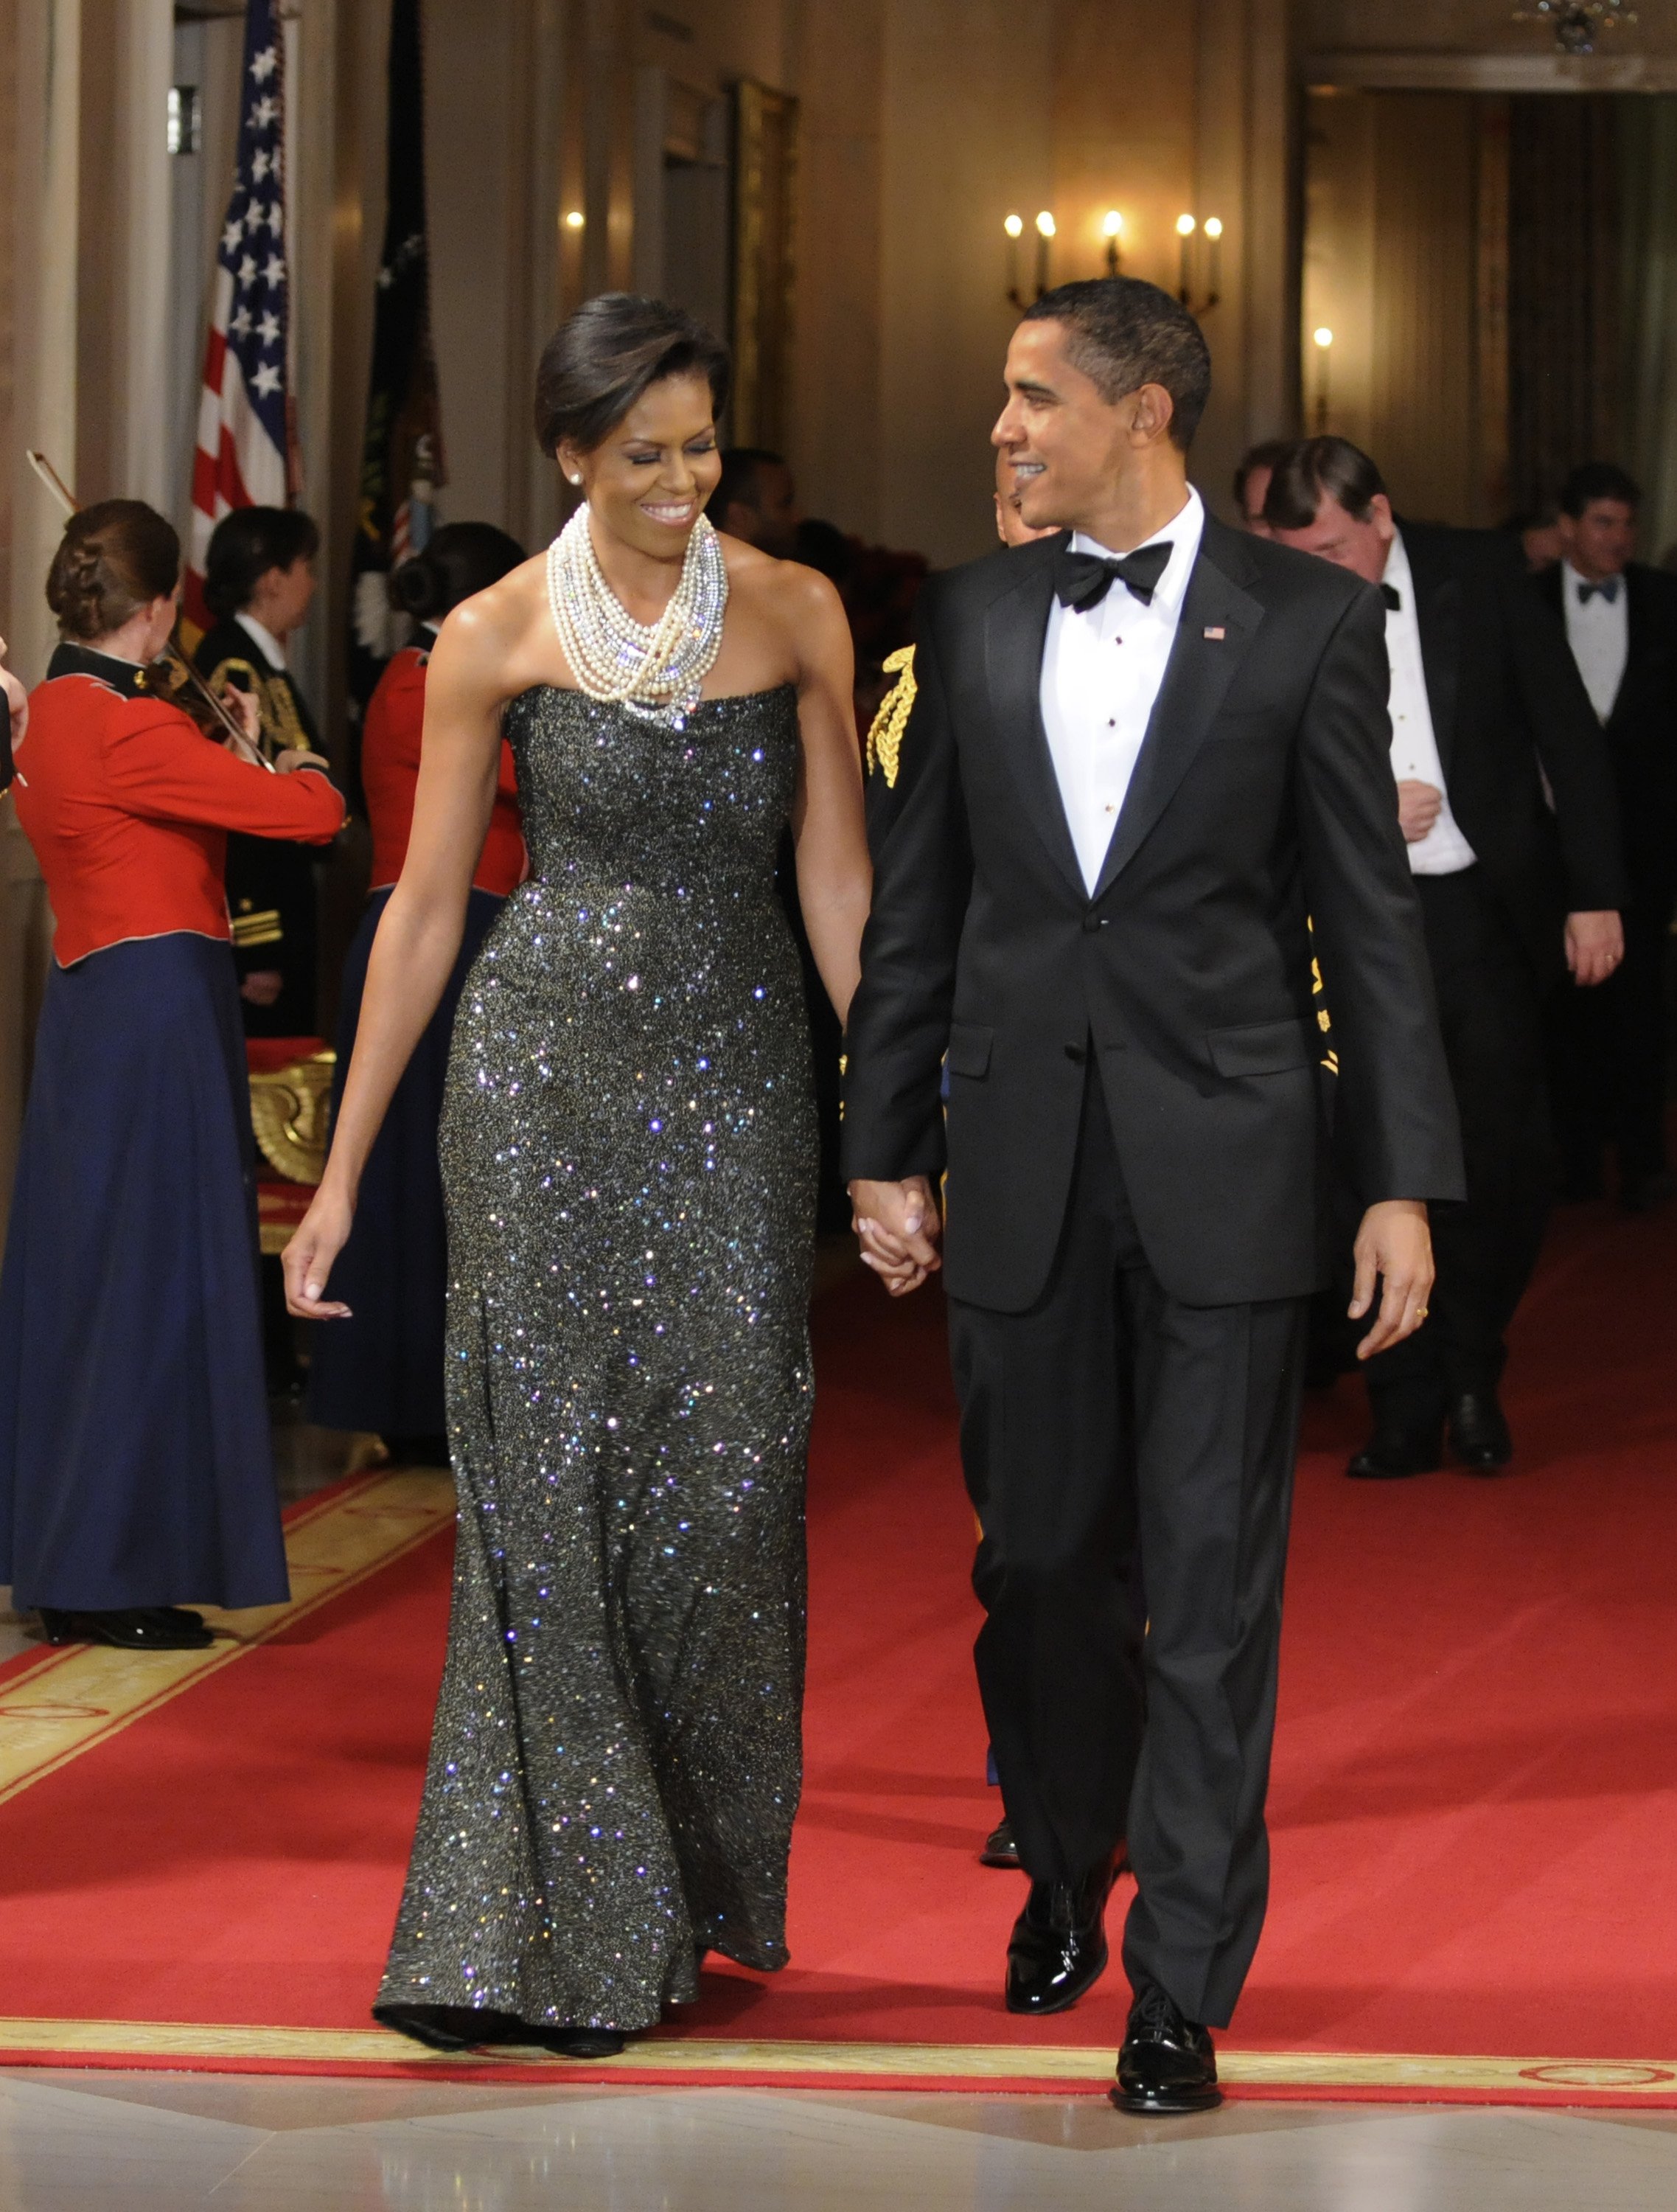 Der Ex-Präsident Barack Obama und seine Frau Michelle Obama betreten den East Room zur Unterhaltung nach einem Gala-Dinner im Weißen Haus am 22. Februar 2009 in Washington, DC | Quelle: Getty Images